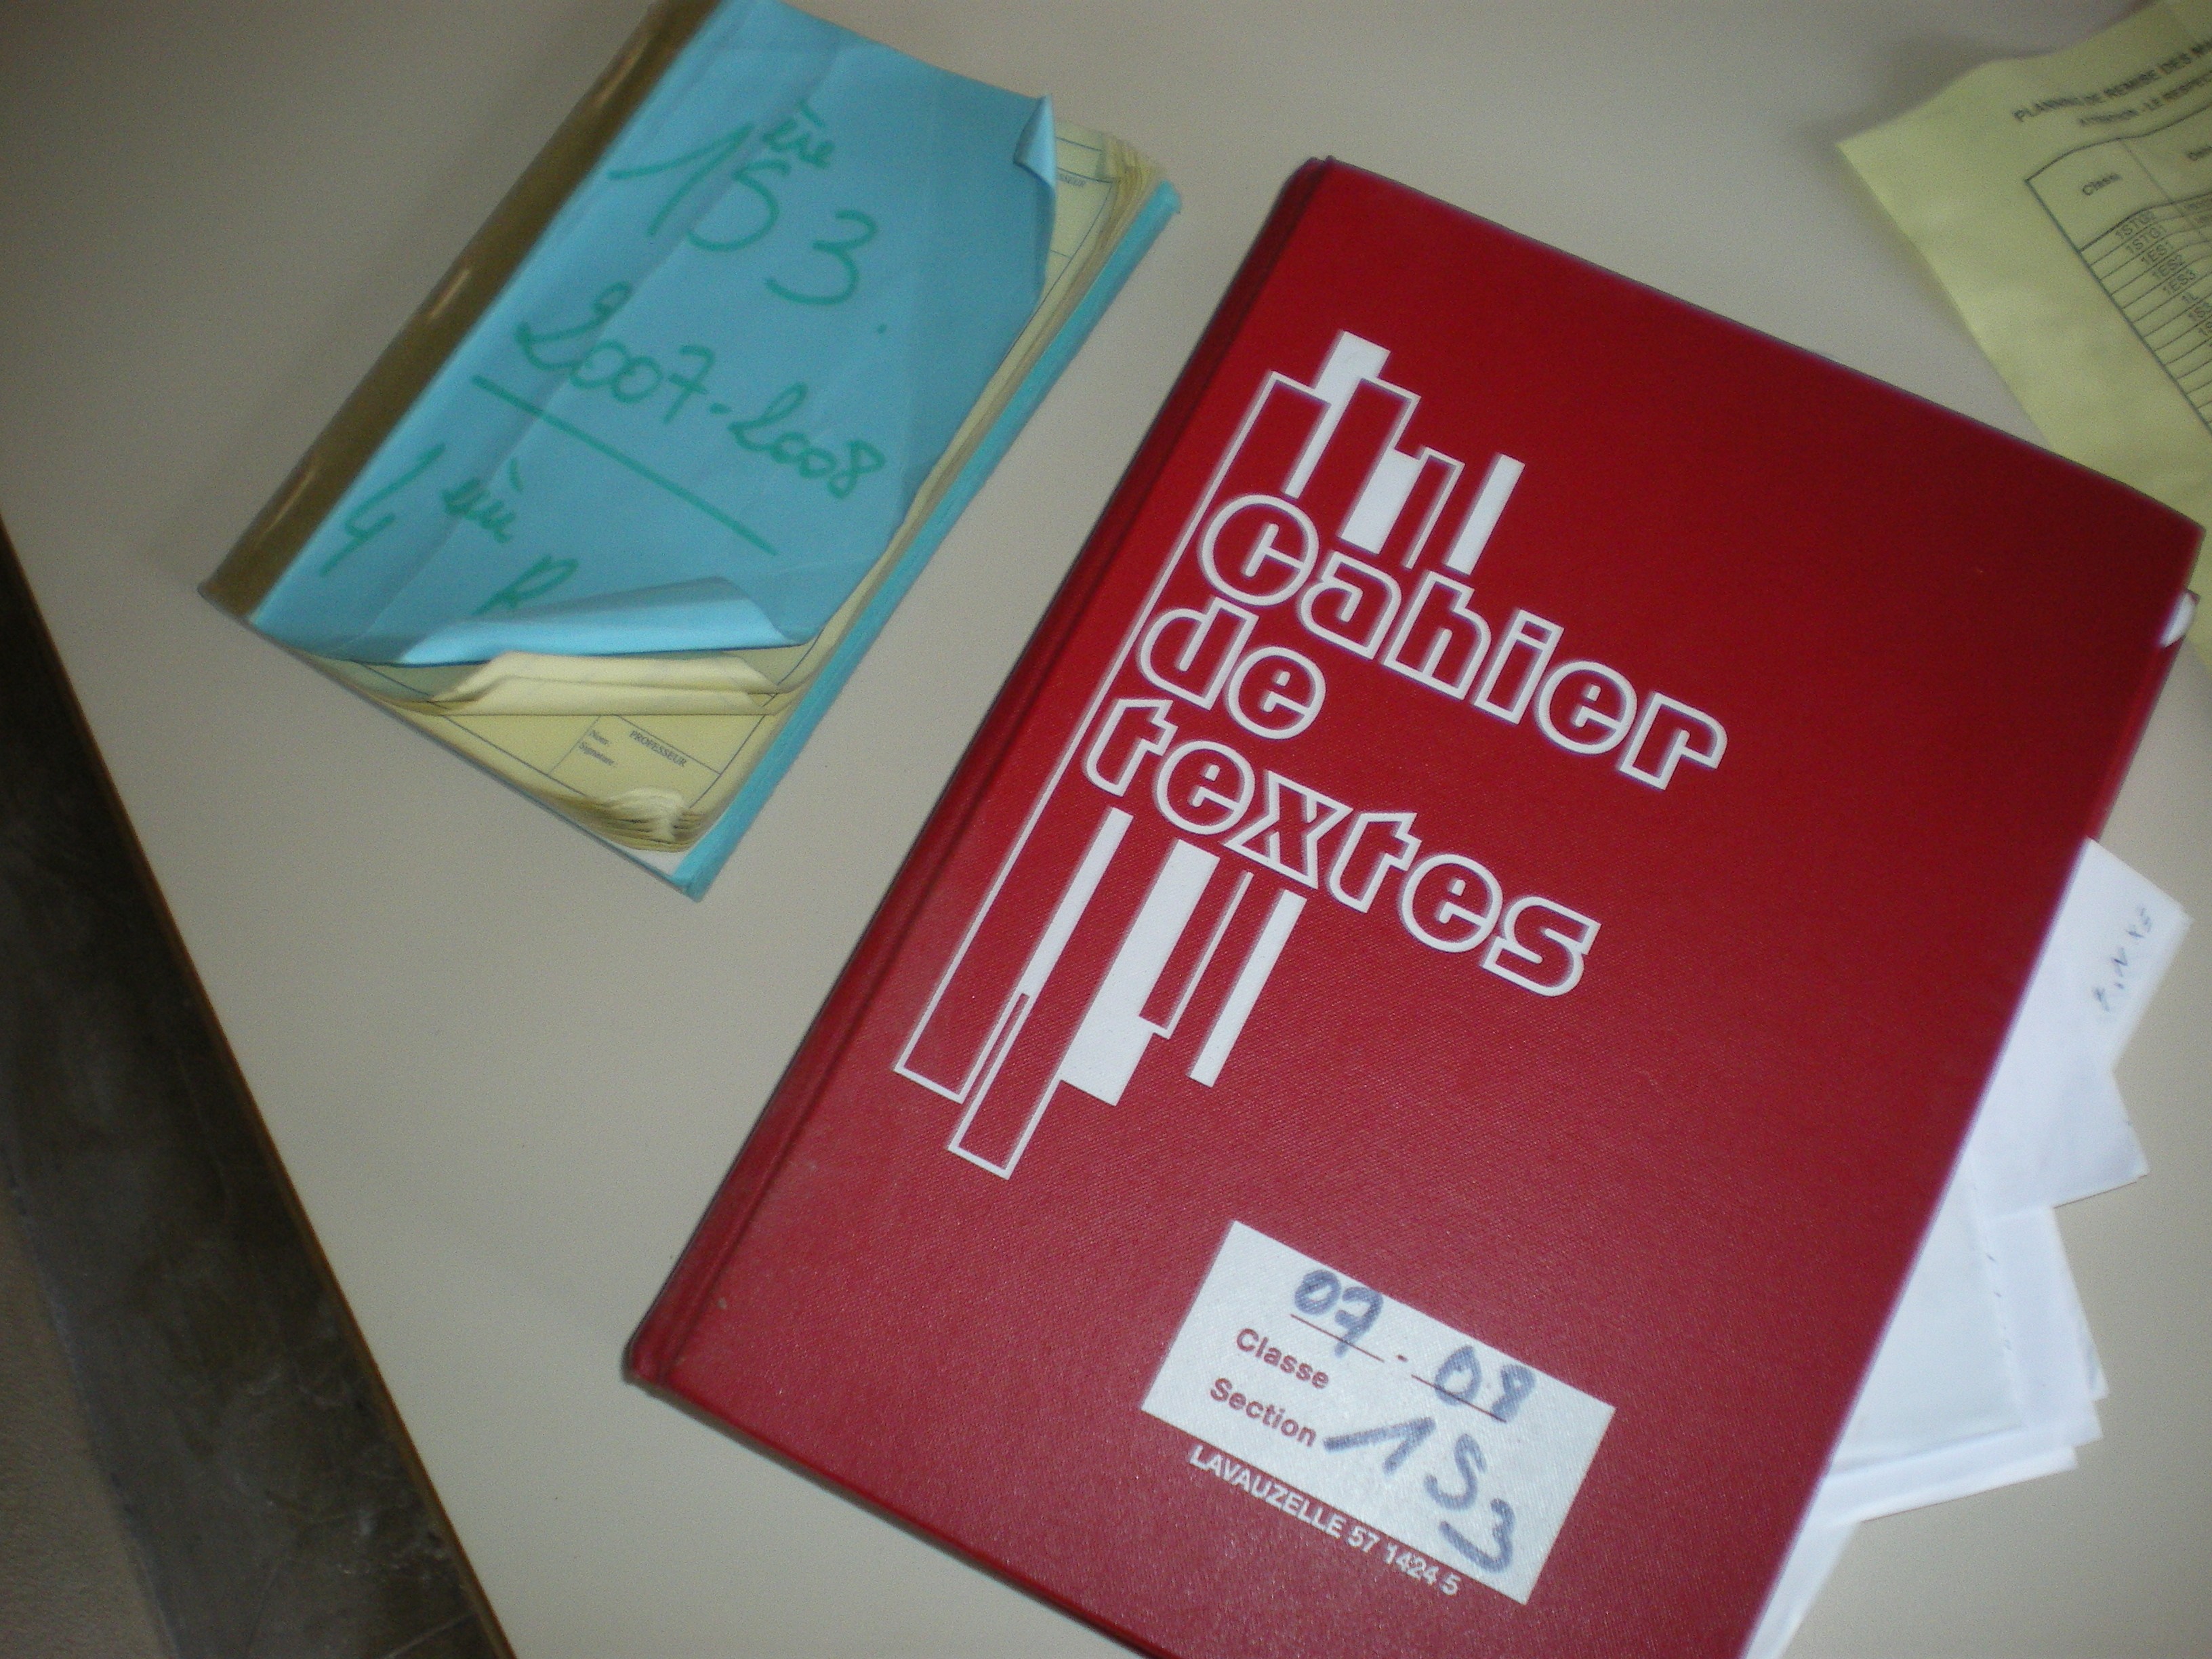 2007 2008 cahier de textes 